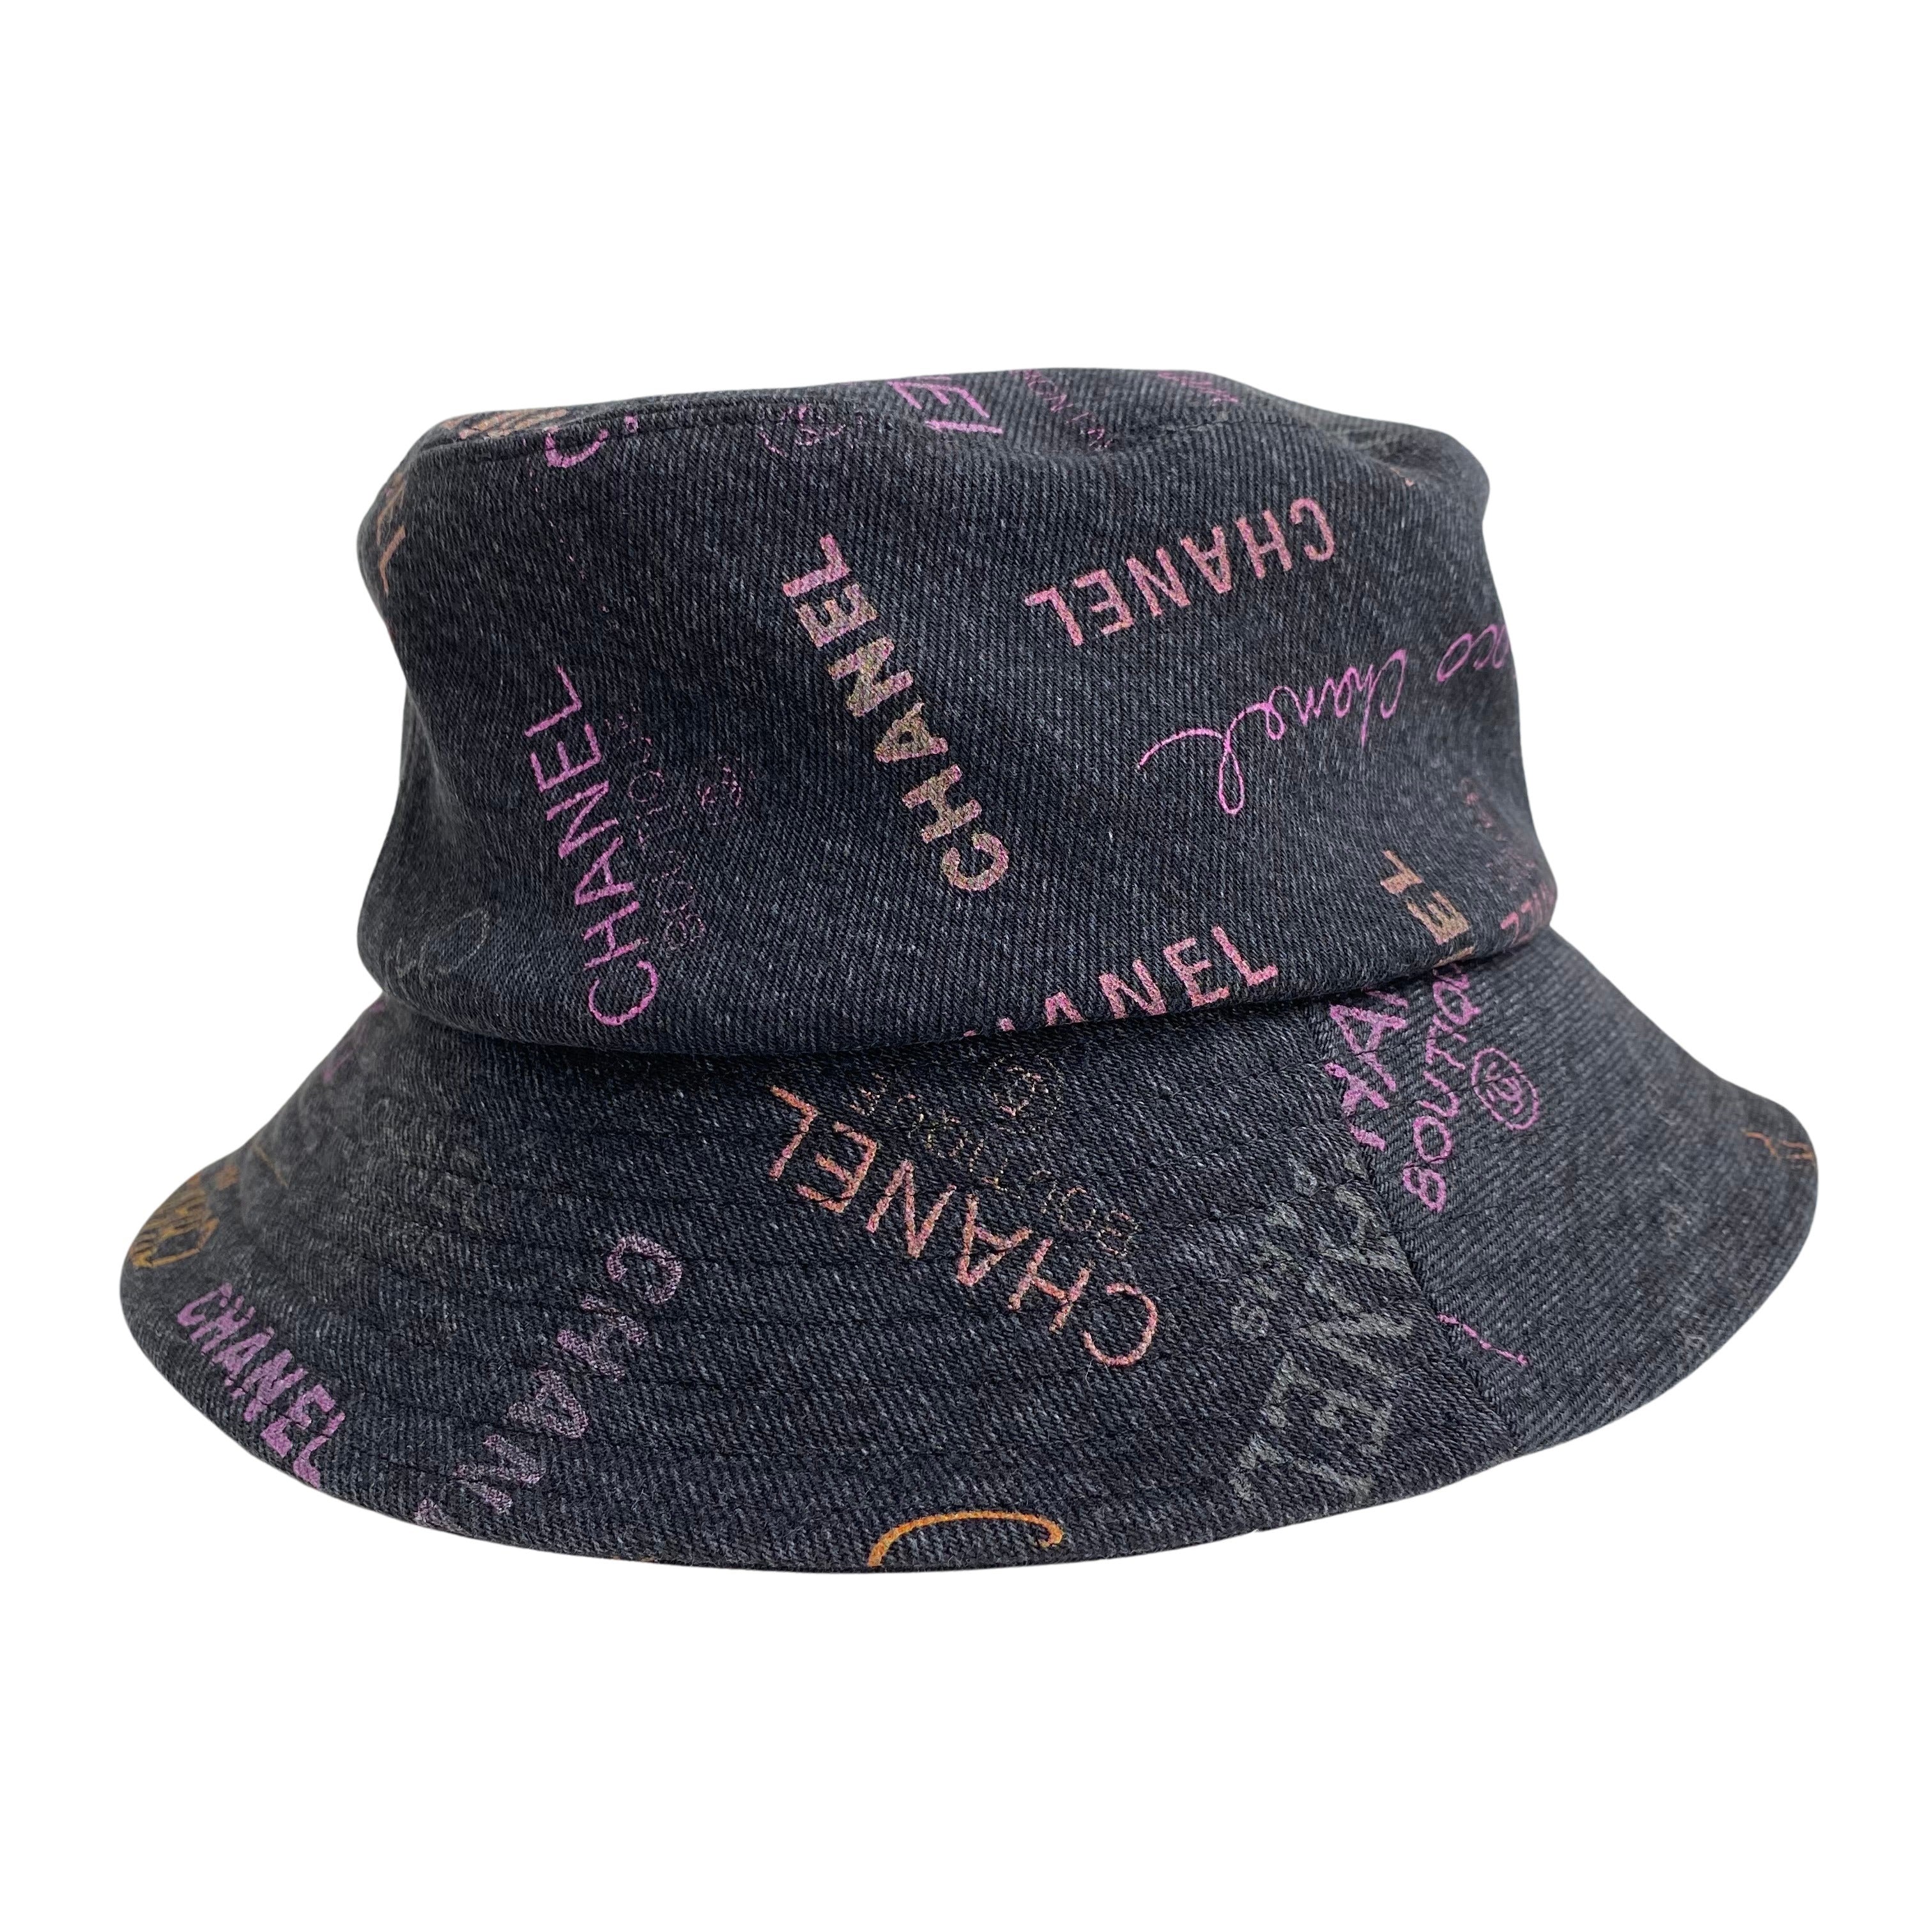 Chanel 22P Black Denim Cloche Hat | Dearluxe